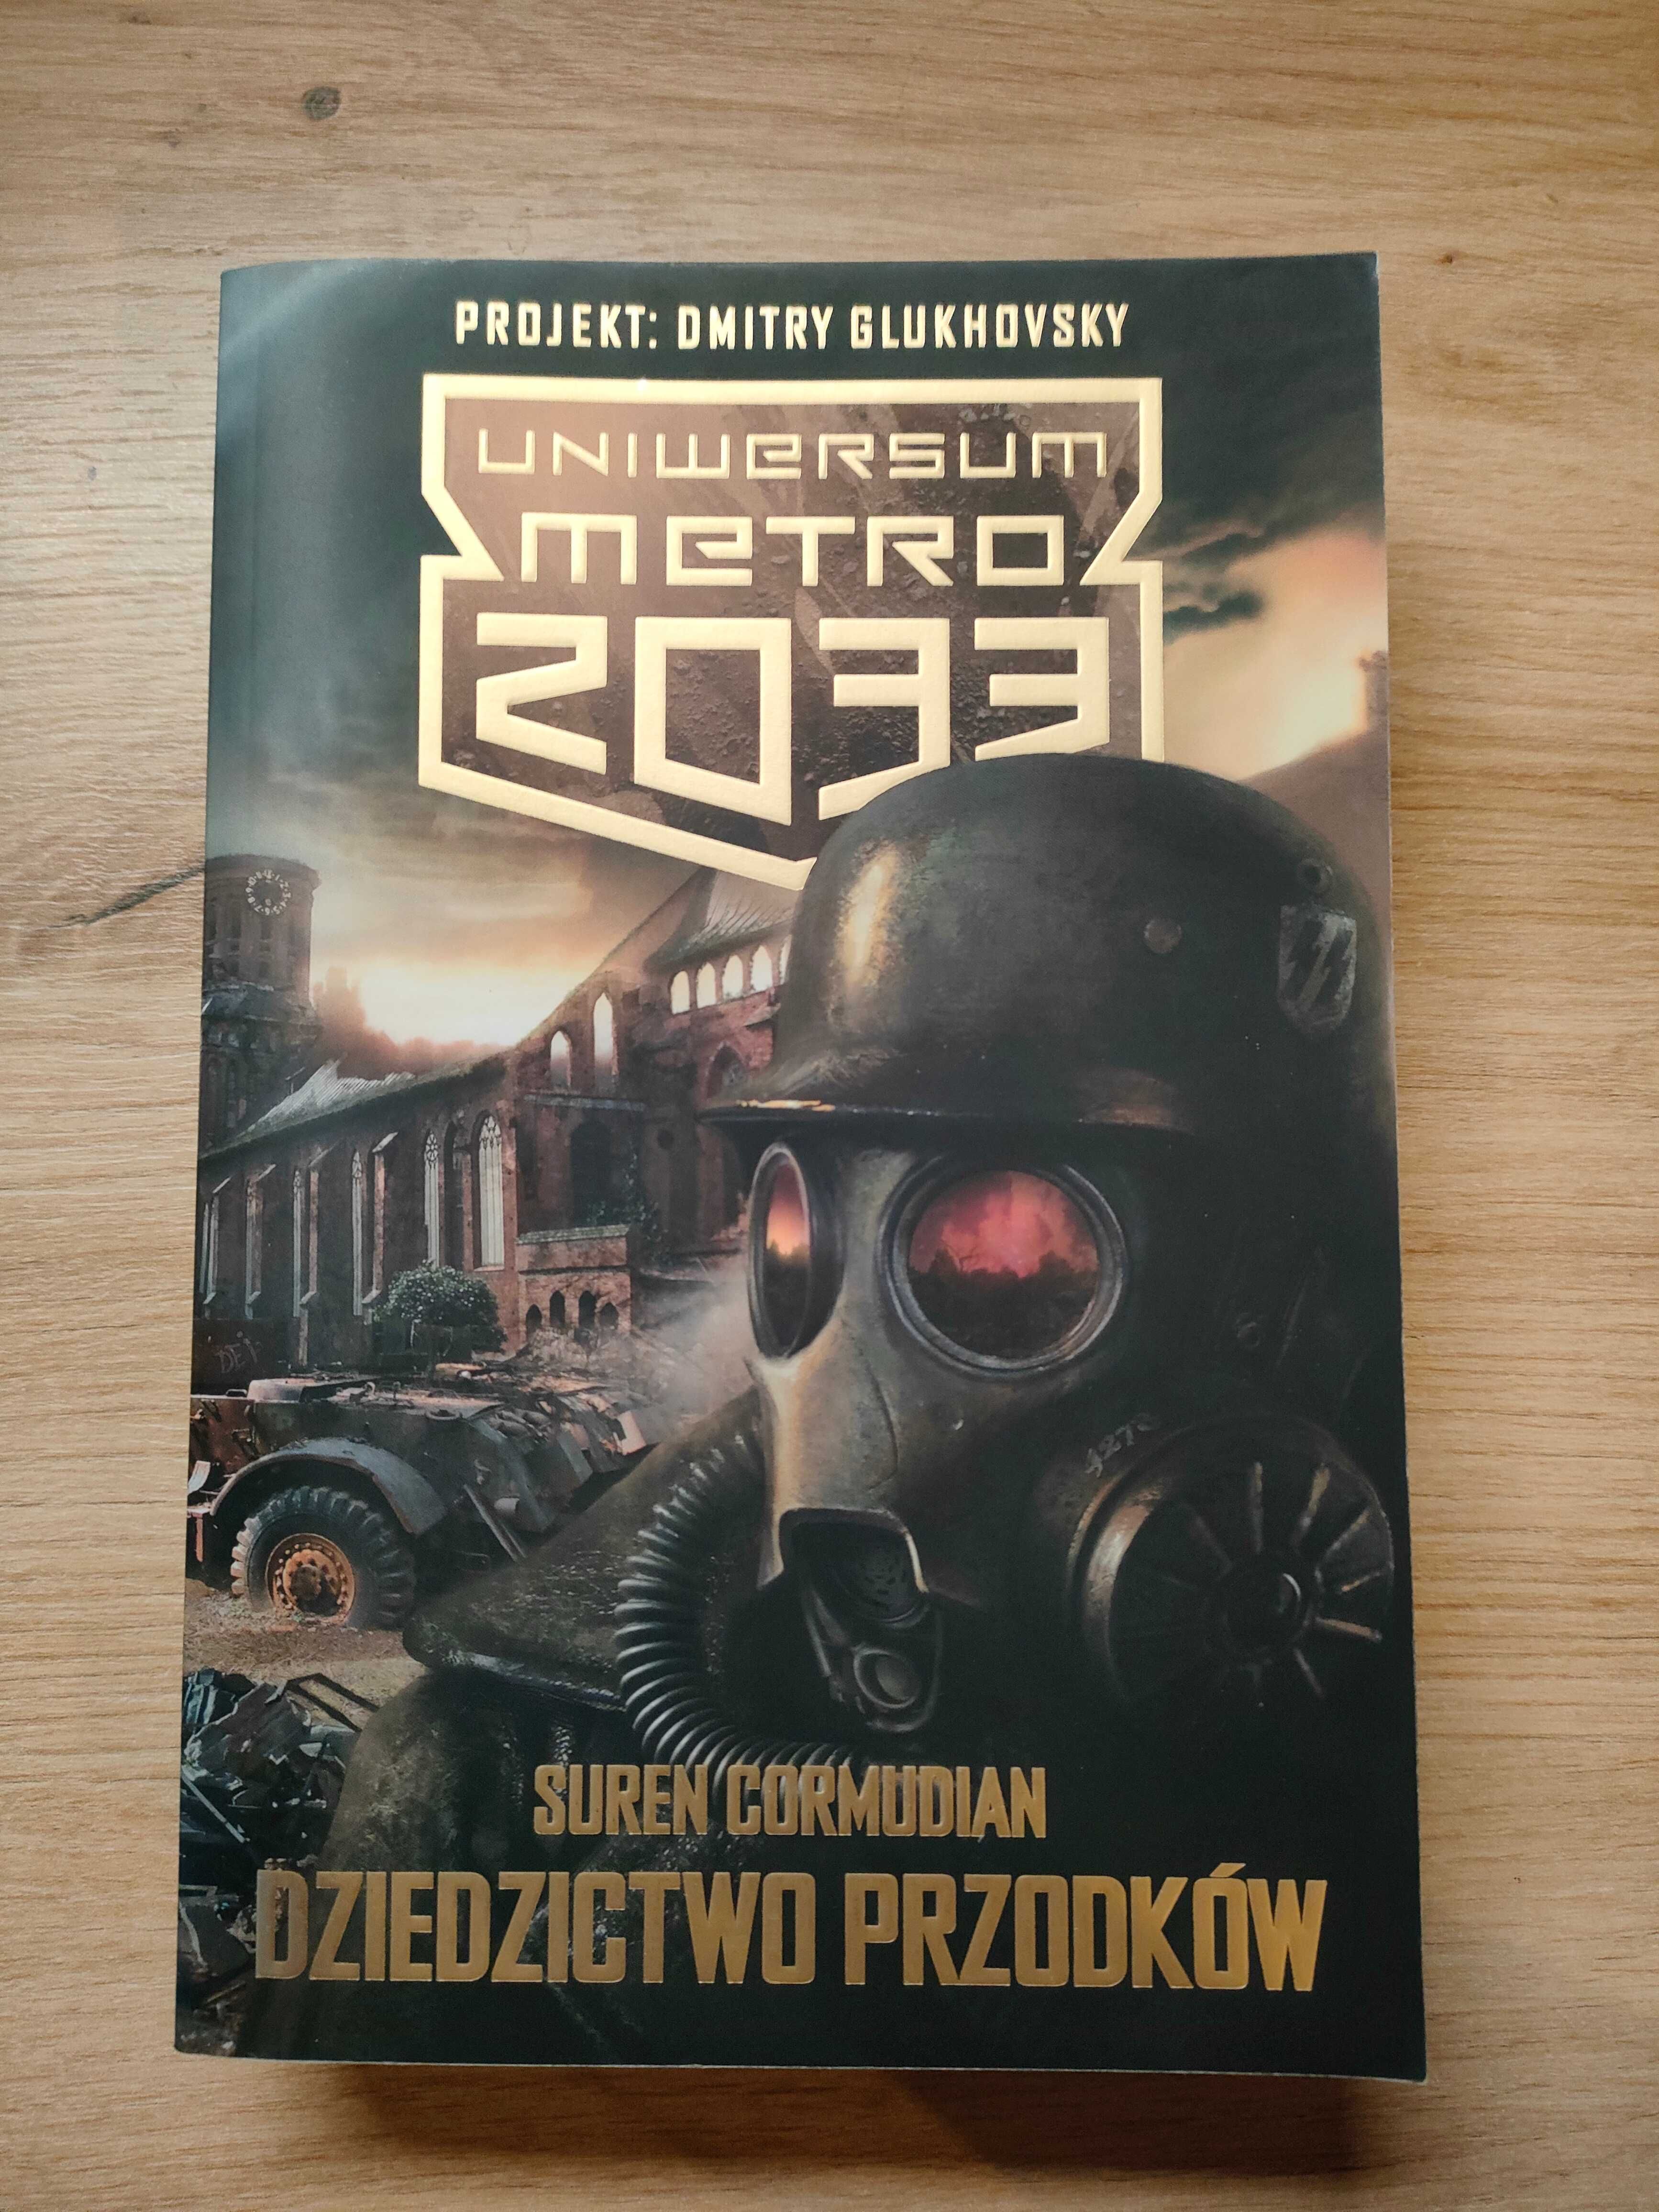 Suren Cormudian "Dziedzictwo przodków" Uniwersum Metro 2033 Glukhovsky